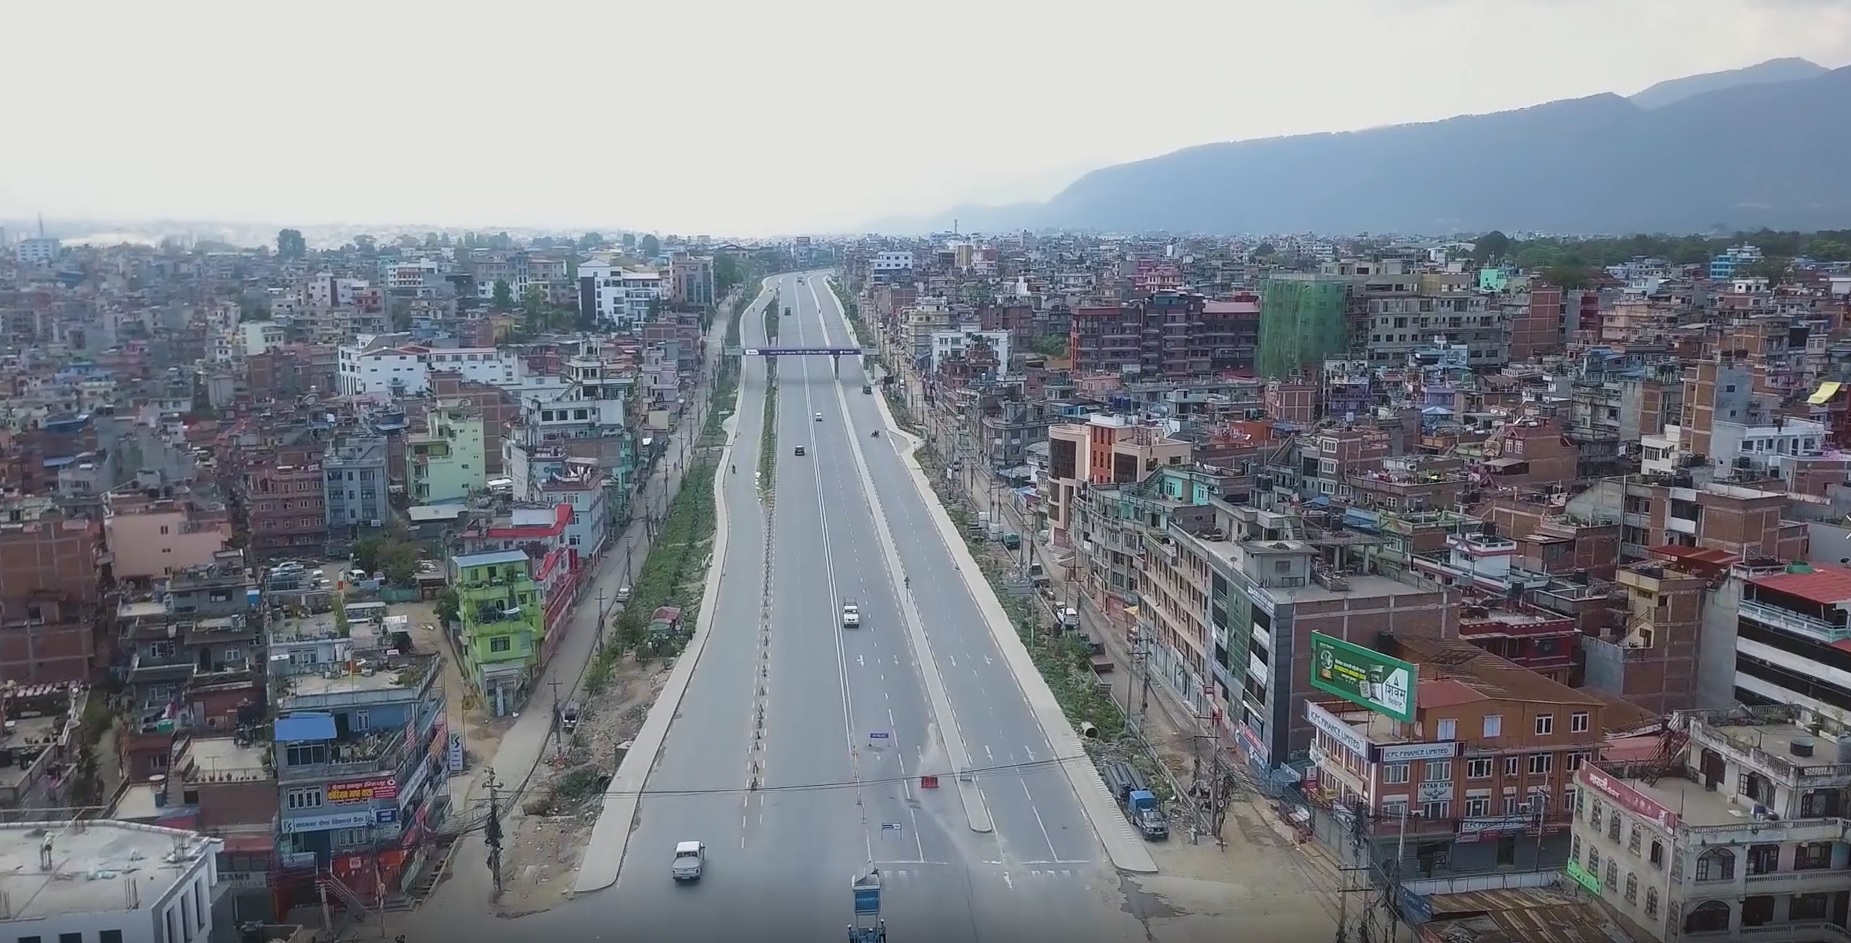 काठमाडौंमा भोलि रातिदेखि भदौ १० गतेसम्म निषेधाज्ञा, सवारीसाधन चलाउन नपाइने